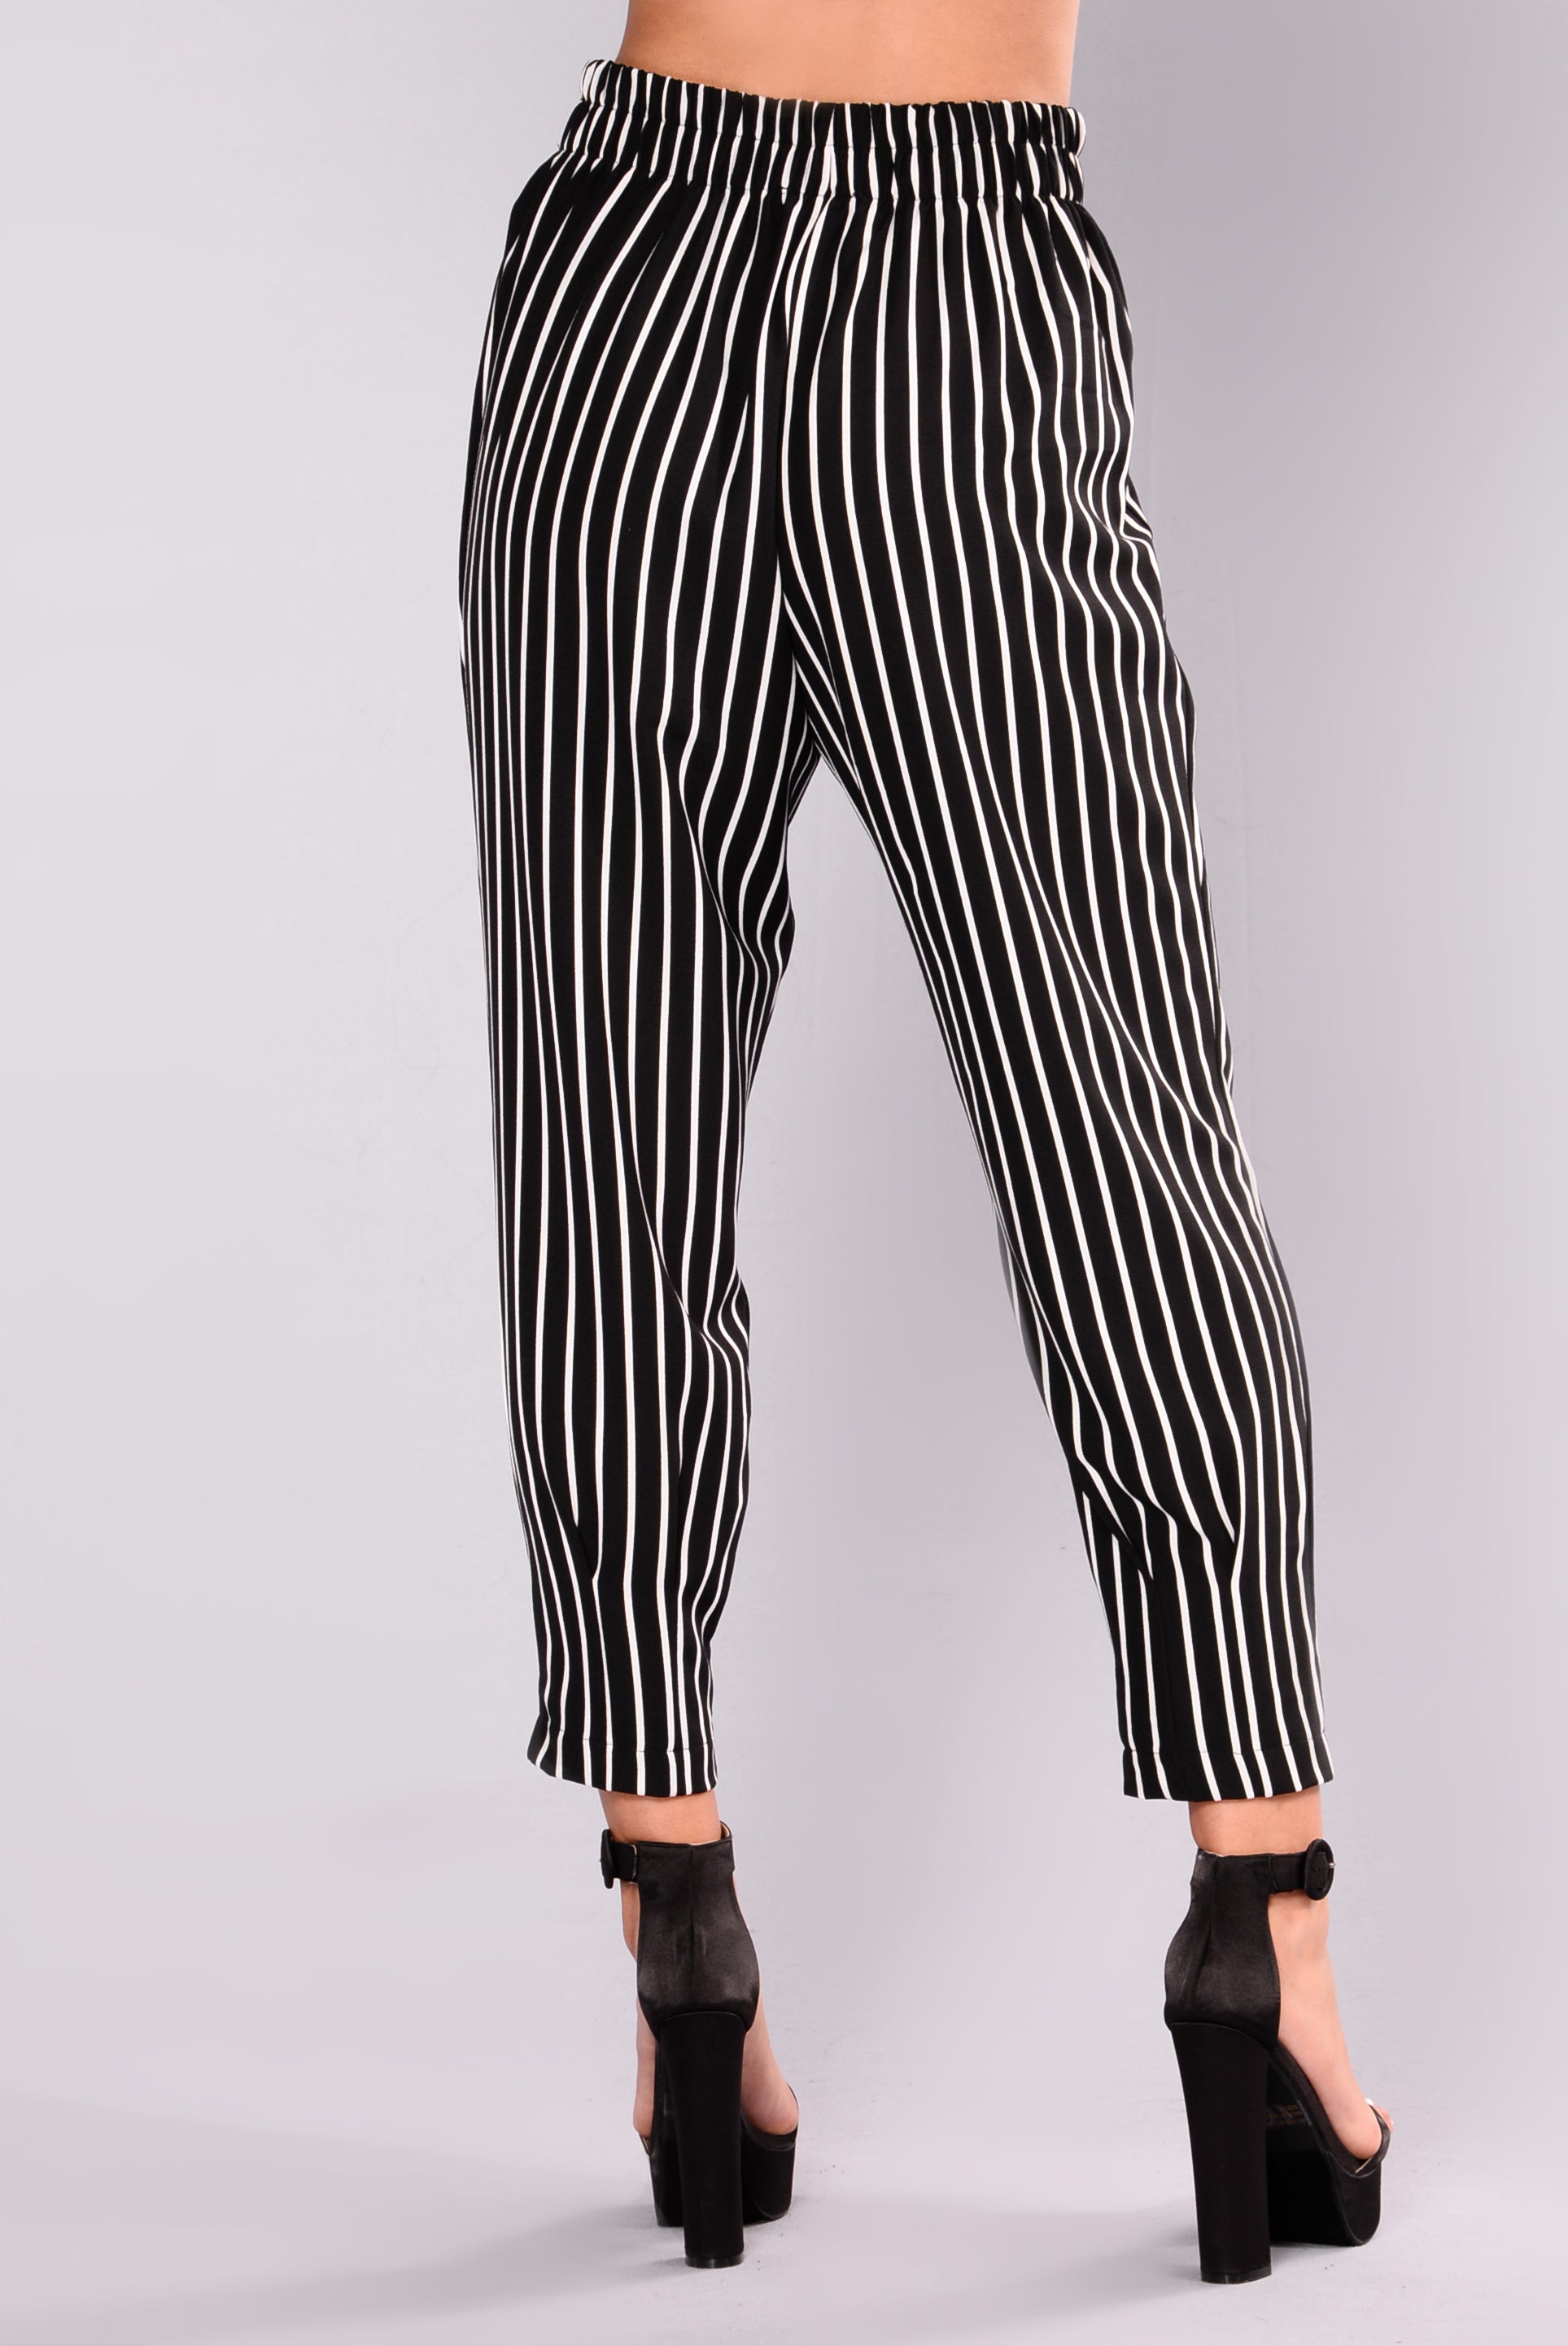 Kylie Pin Stripe Pants - Black/White